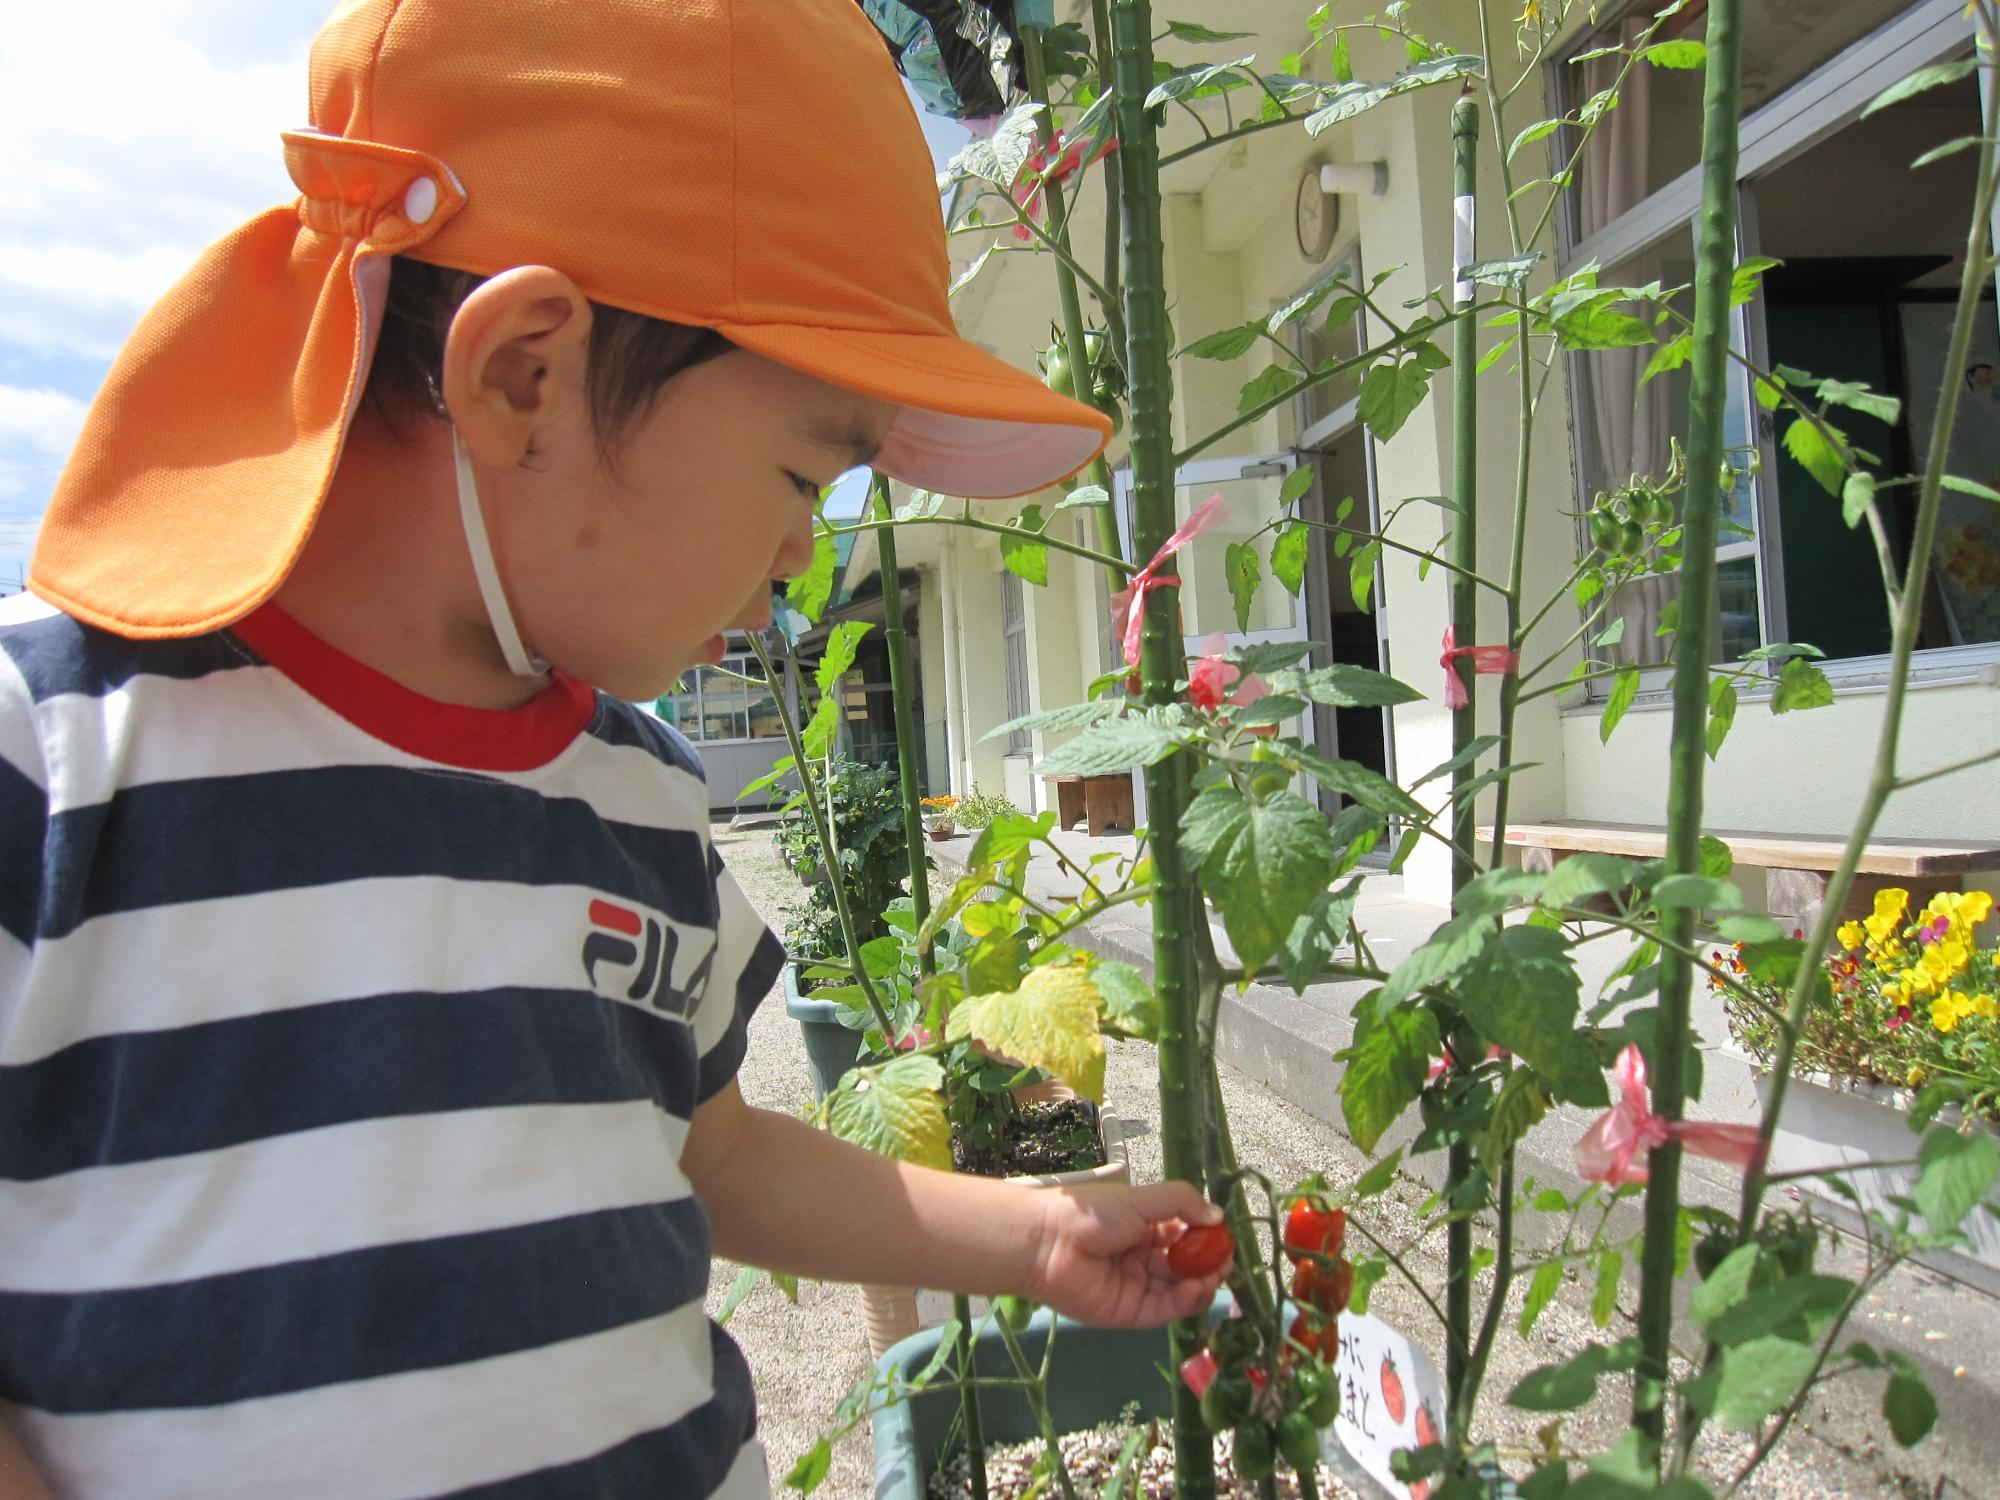 オレンジの帽子の園児がミニトマトを収穫しようとする写真